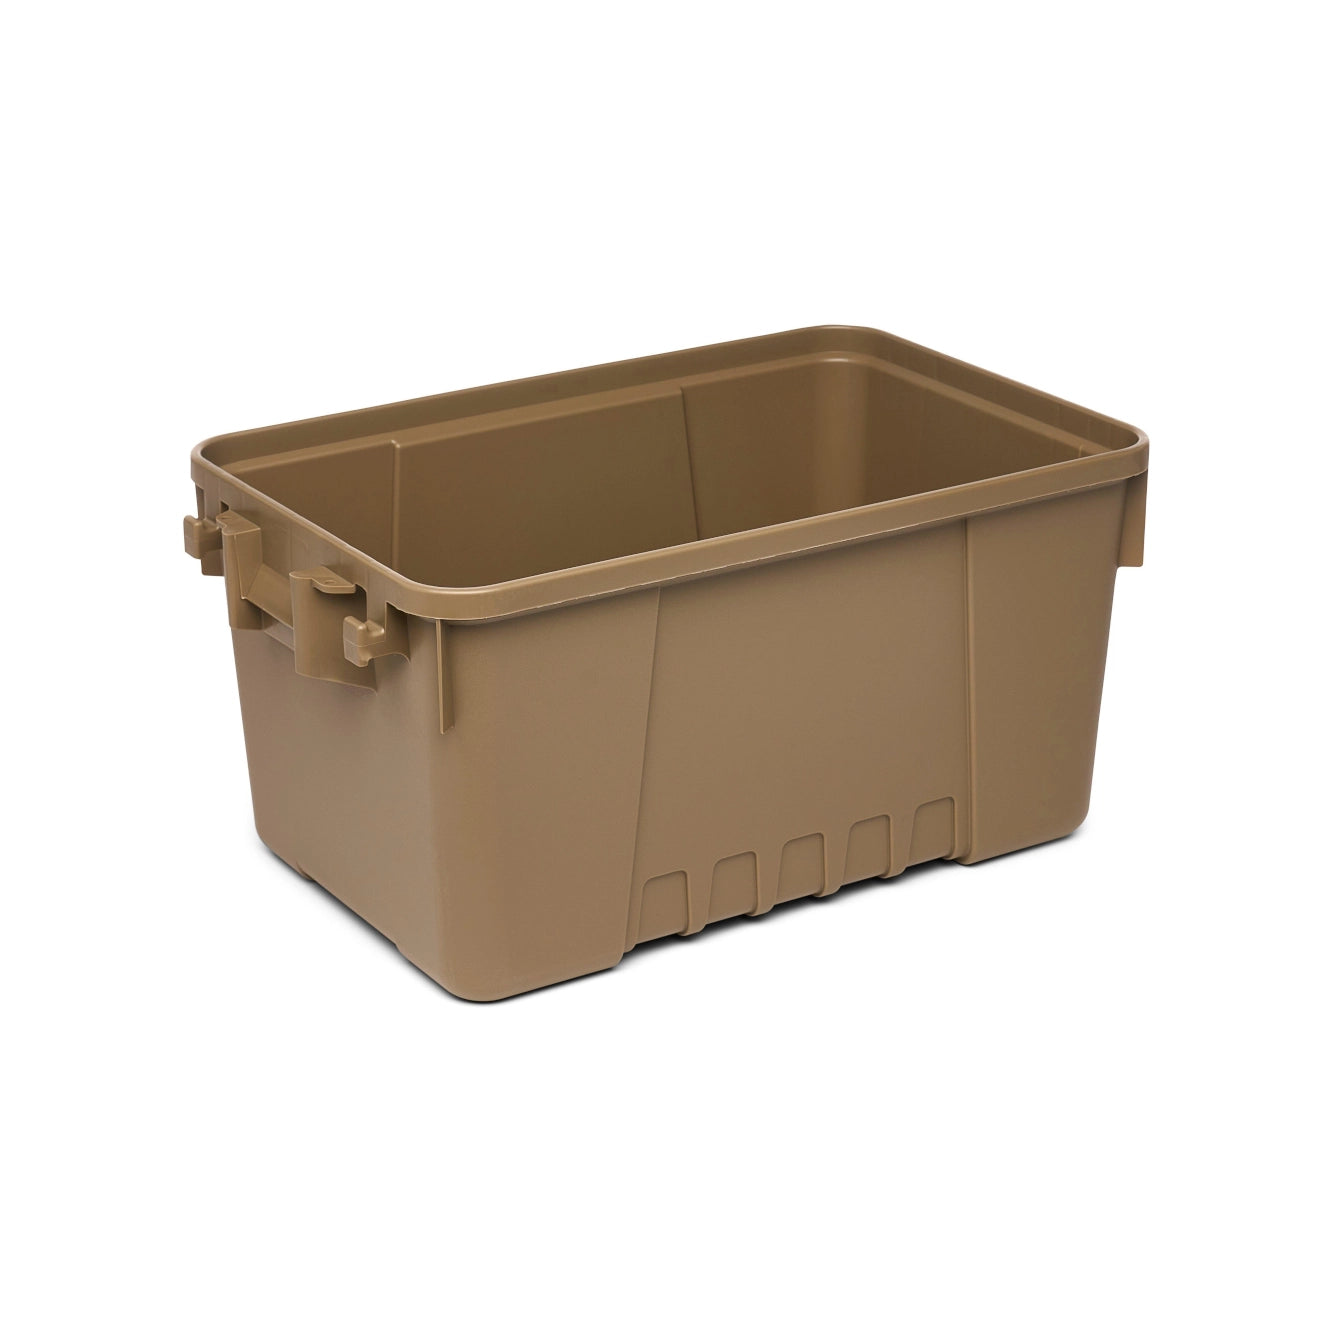 Small tactical equipment box Plano 53-litre Tan